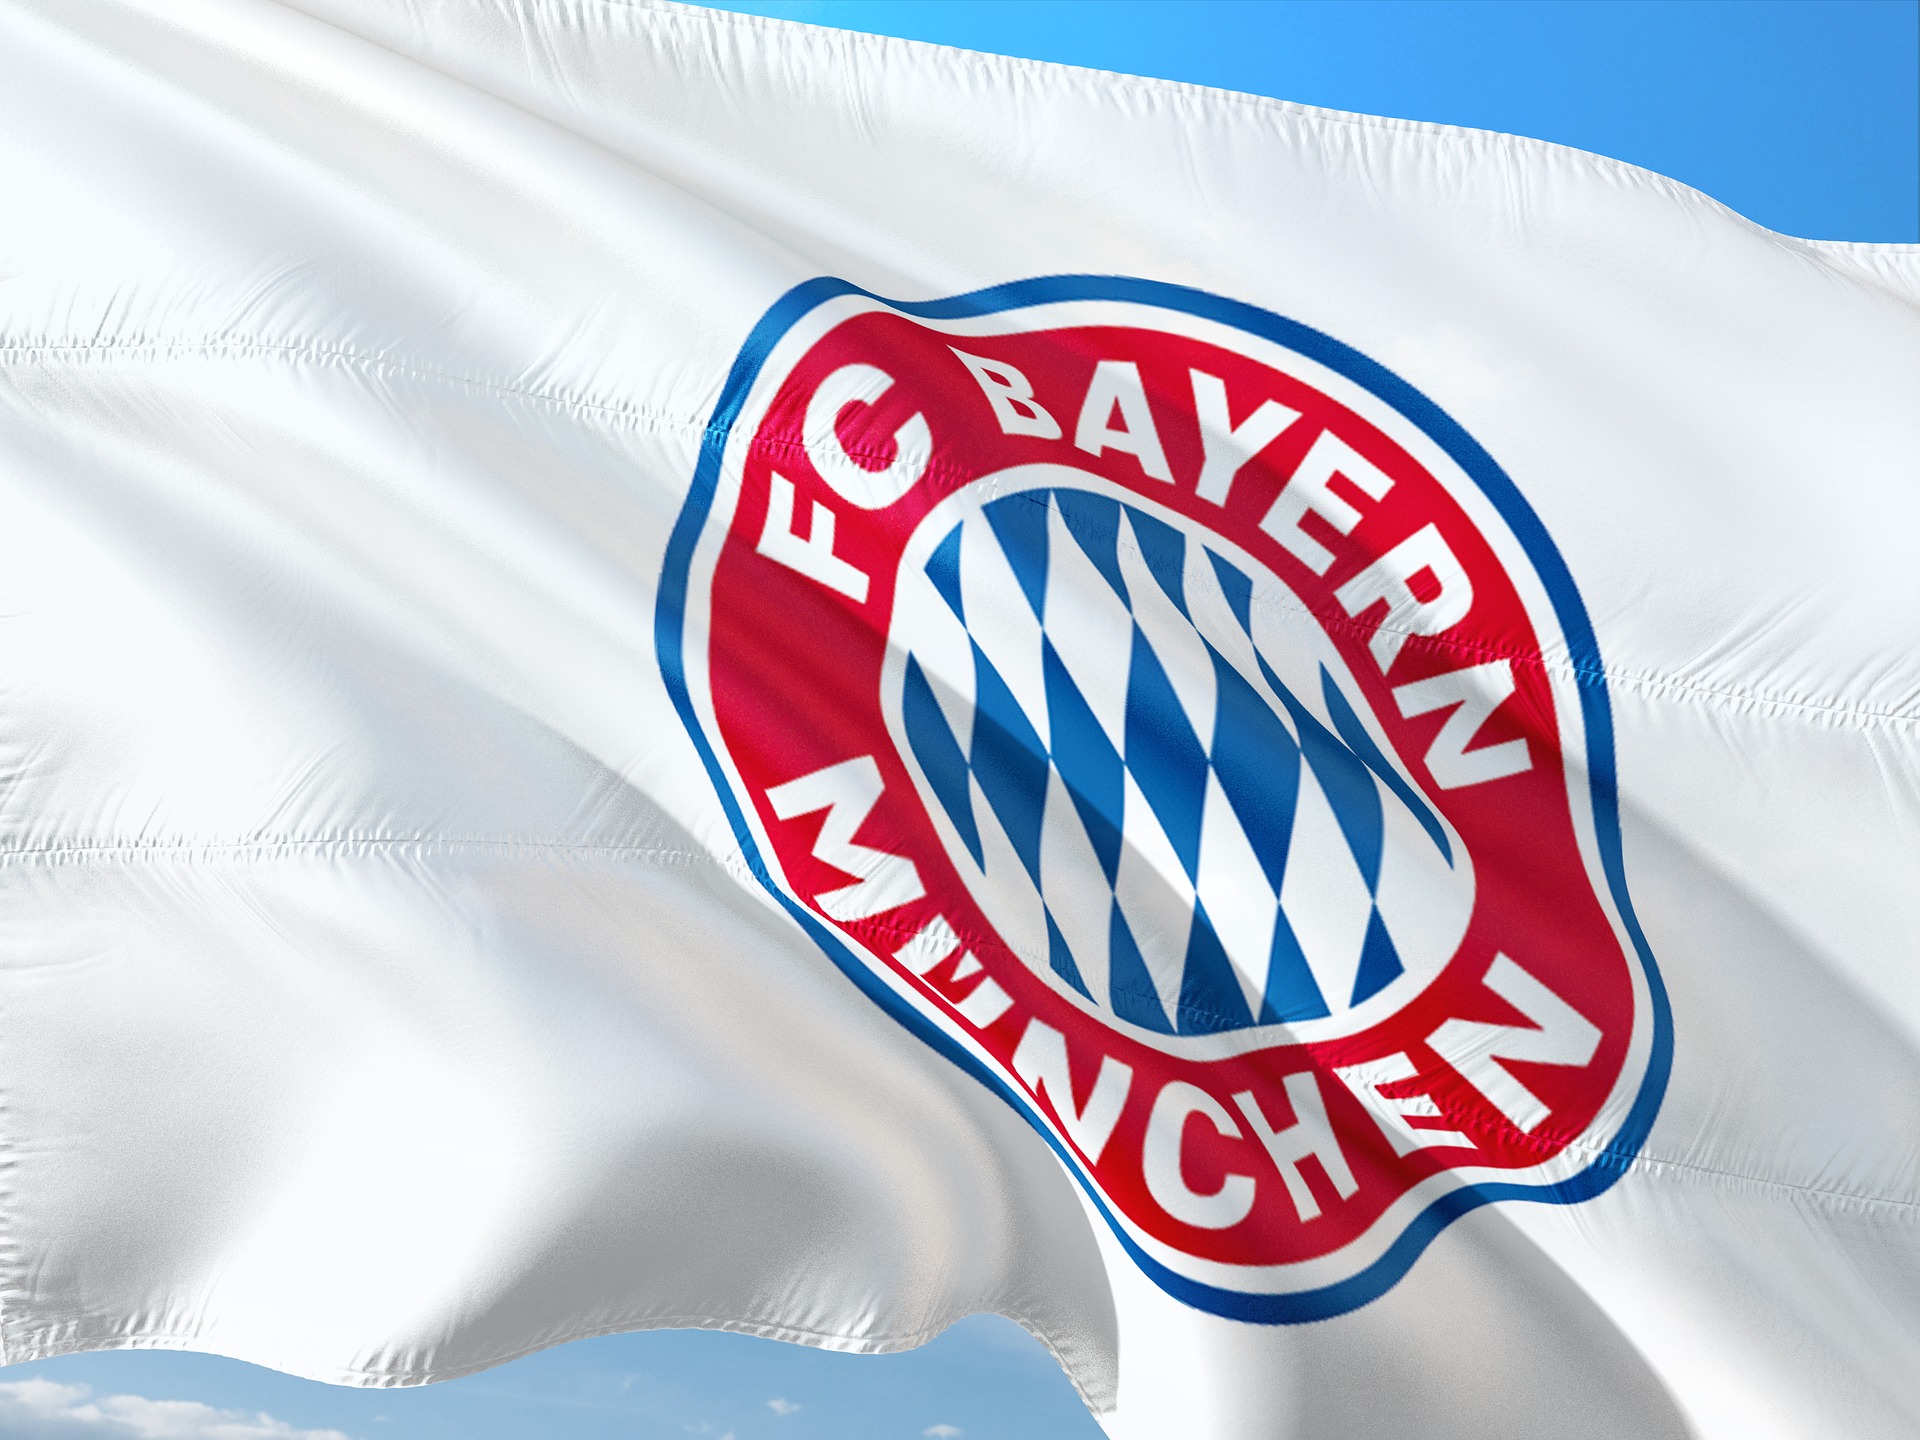 Duma Bawarii i jeden z najlepszych klubów piłki nożnej, a więc Bayern Monachium w pigułce